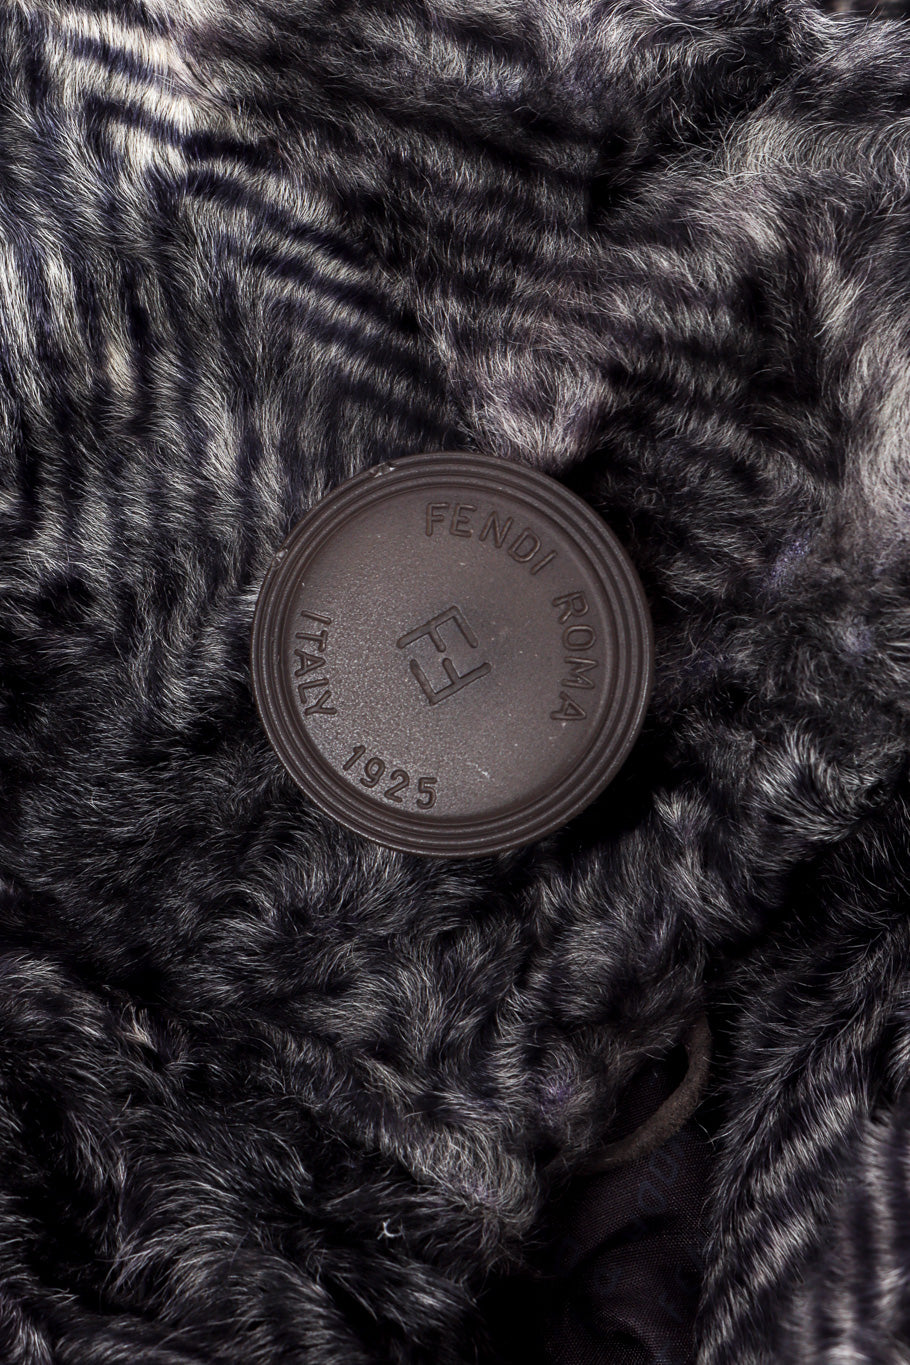 Vintage Fendi Lamb Fur Coat button closeup @recessla